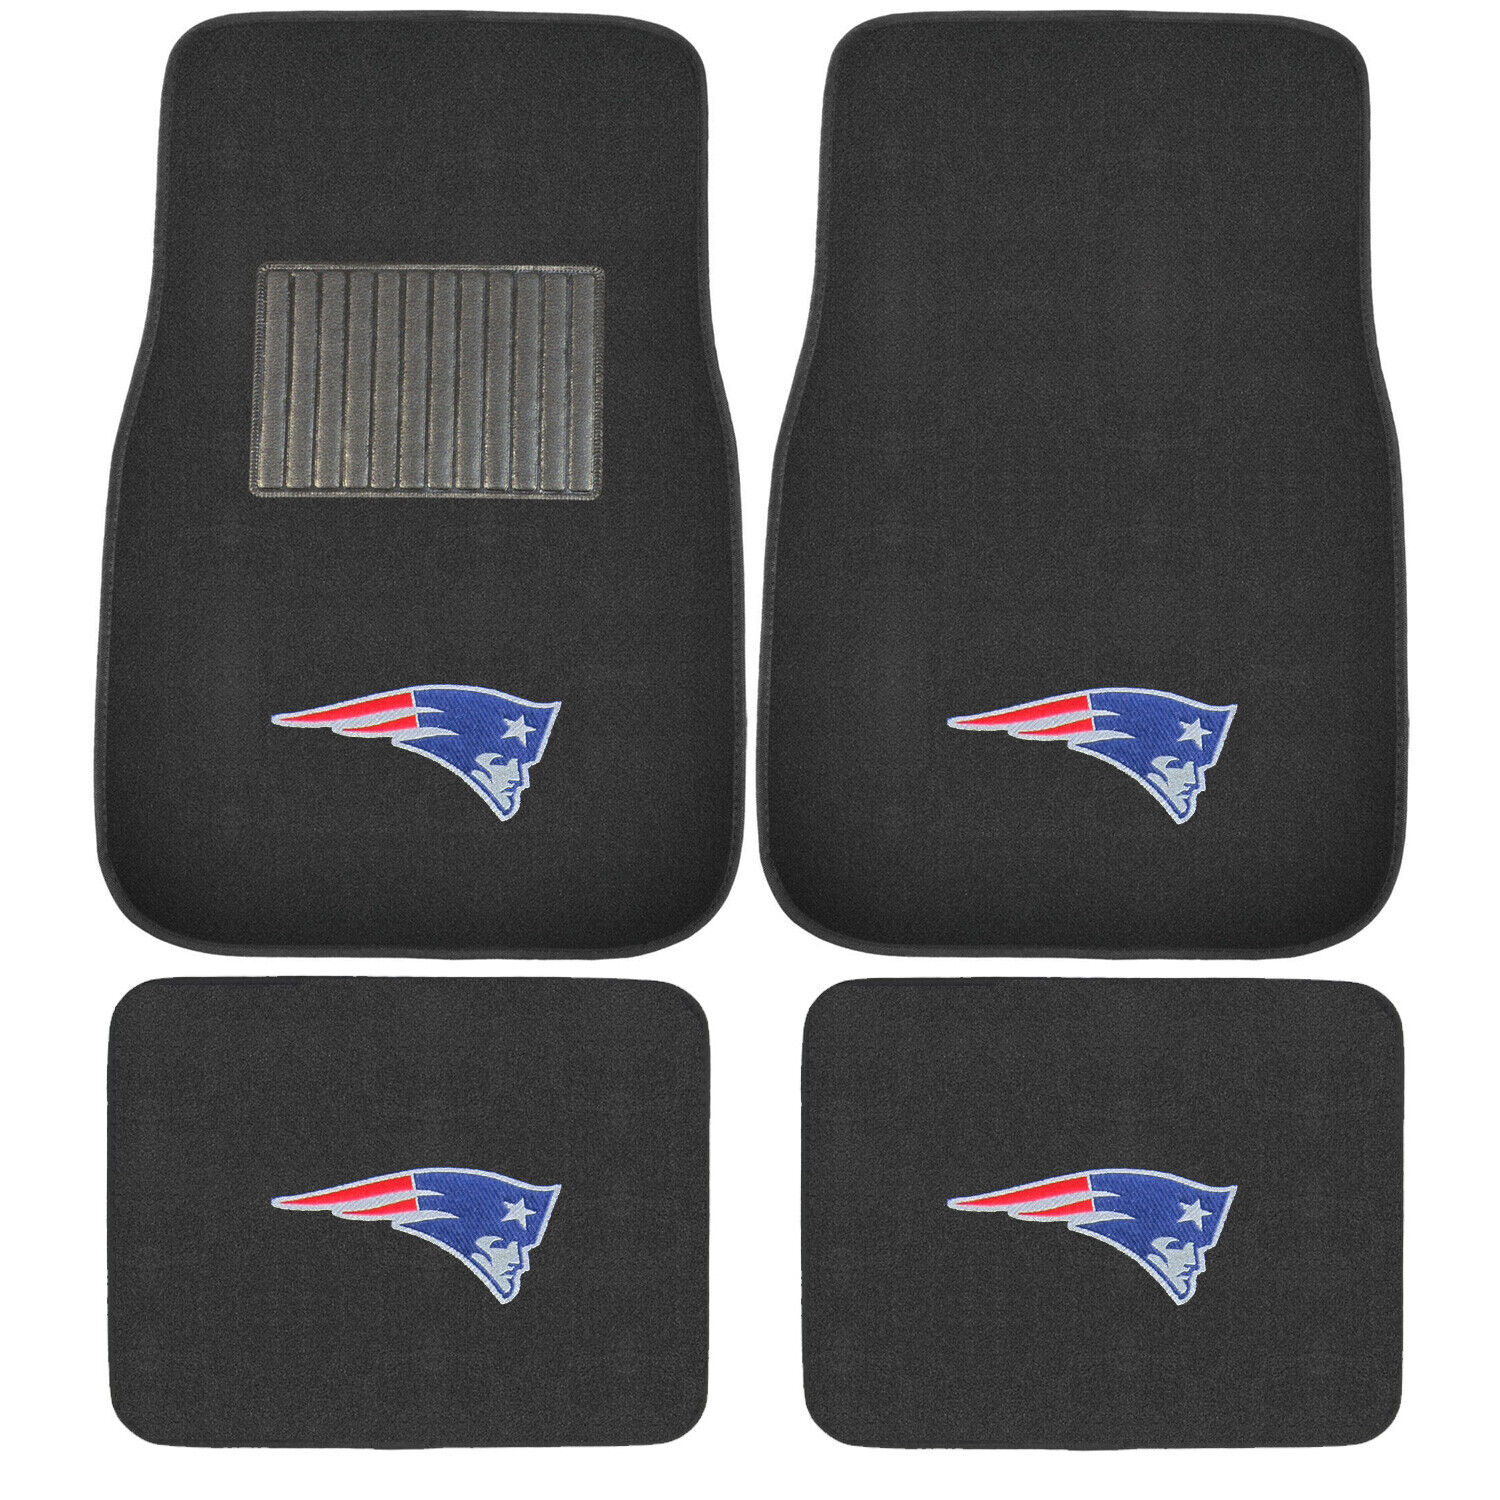 New 4pcs NFL New England Patriots Car Truck Front Rear Carpet Floor Mats Set